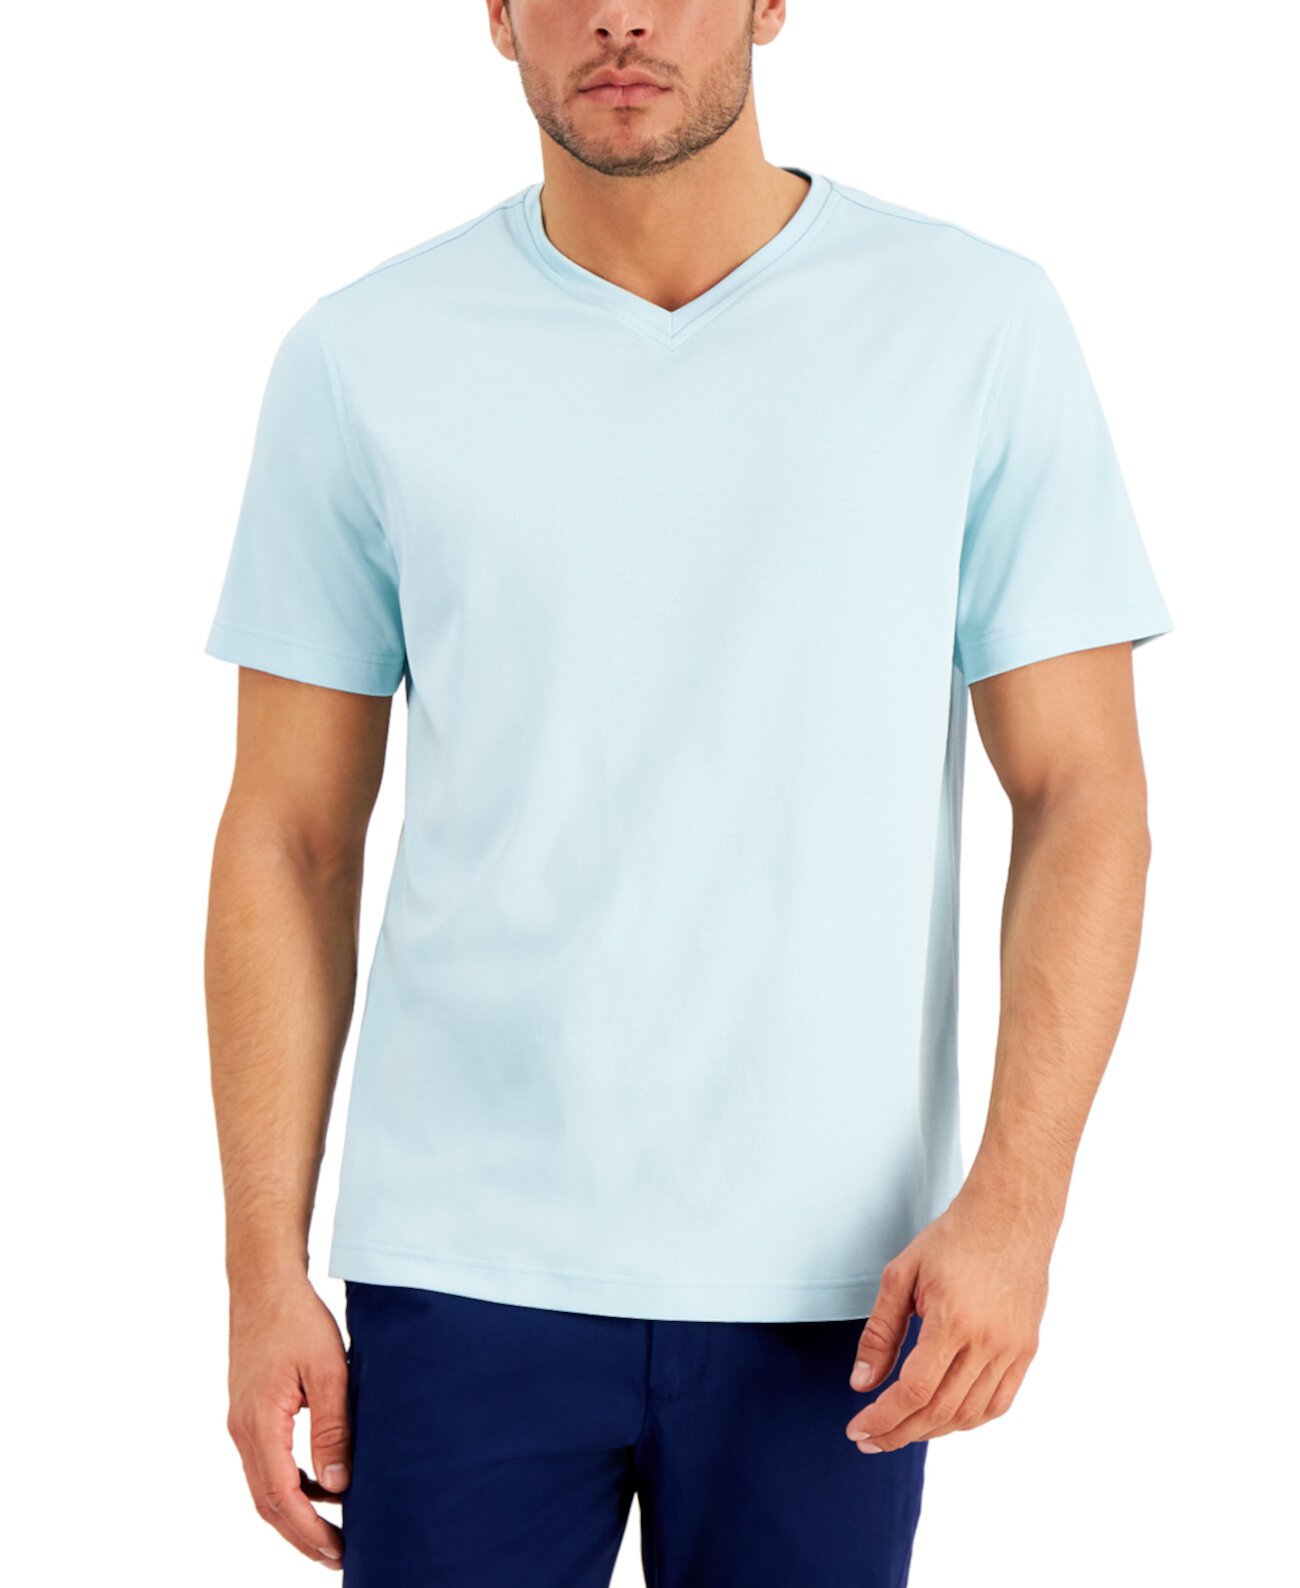 Мужская футболка с V-образным вырезом, созданная для Macy's Tasso Elba